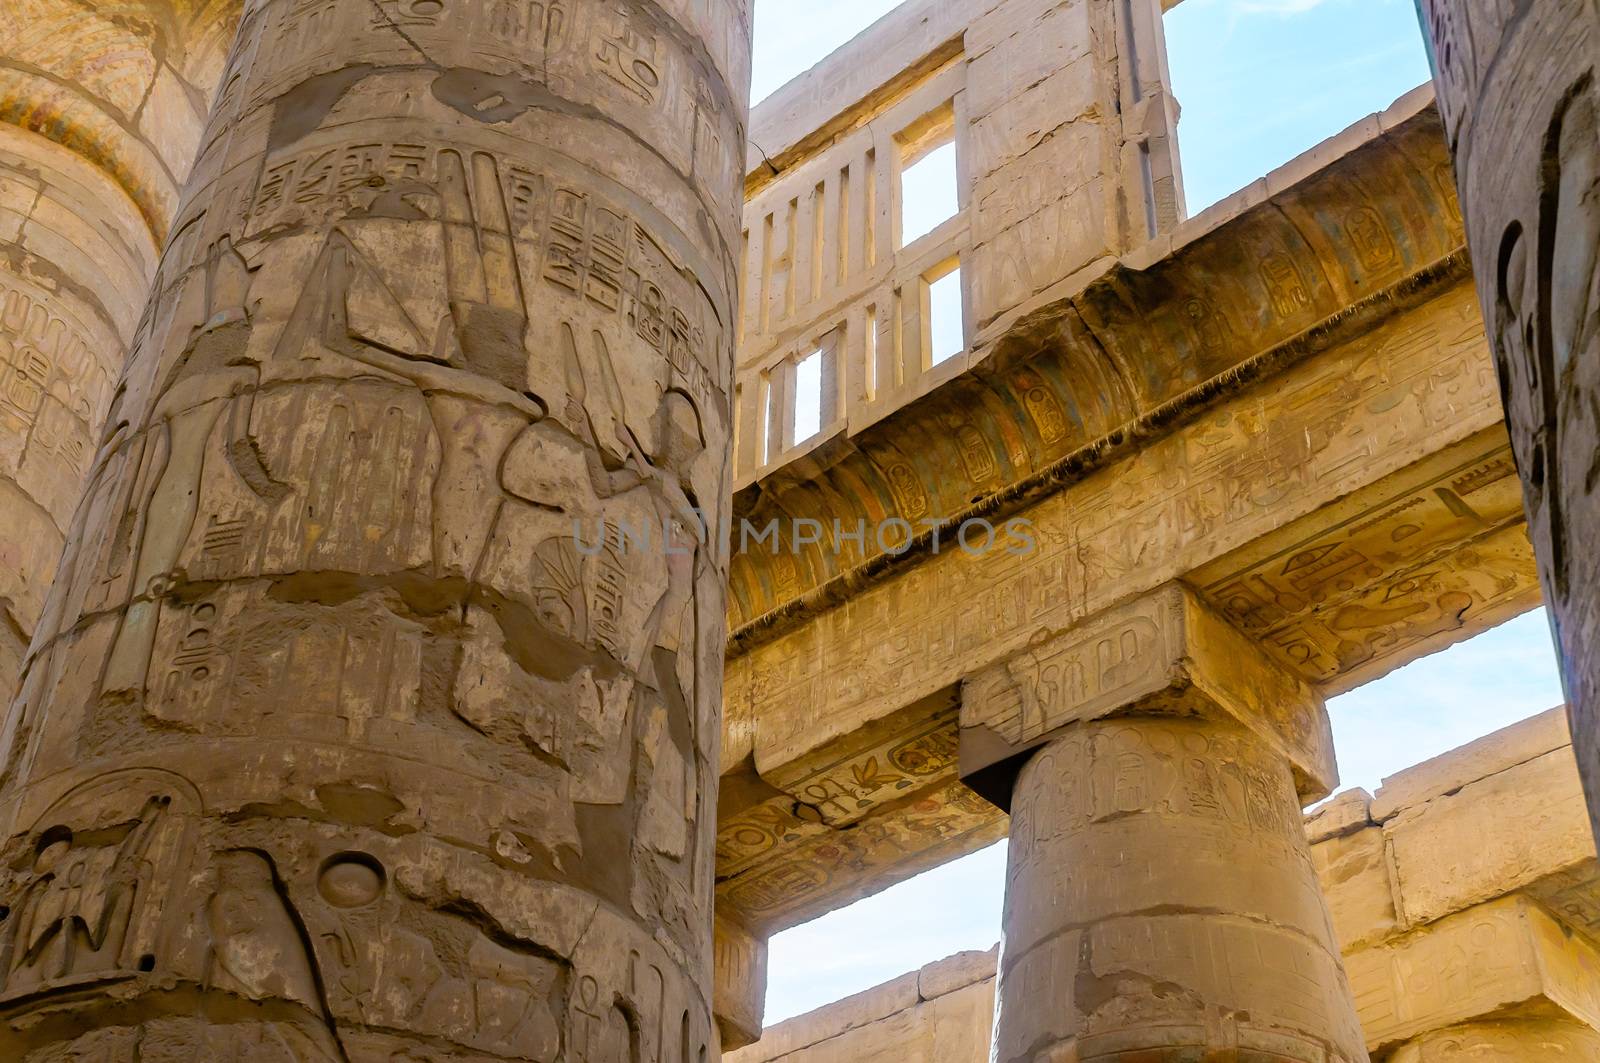 Columns' detail in the Karnak temple in Luxor, Egypt by MaxalTamor